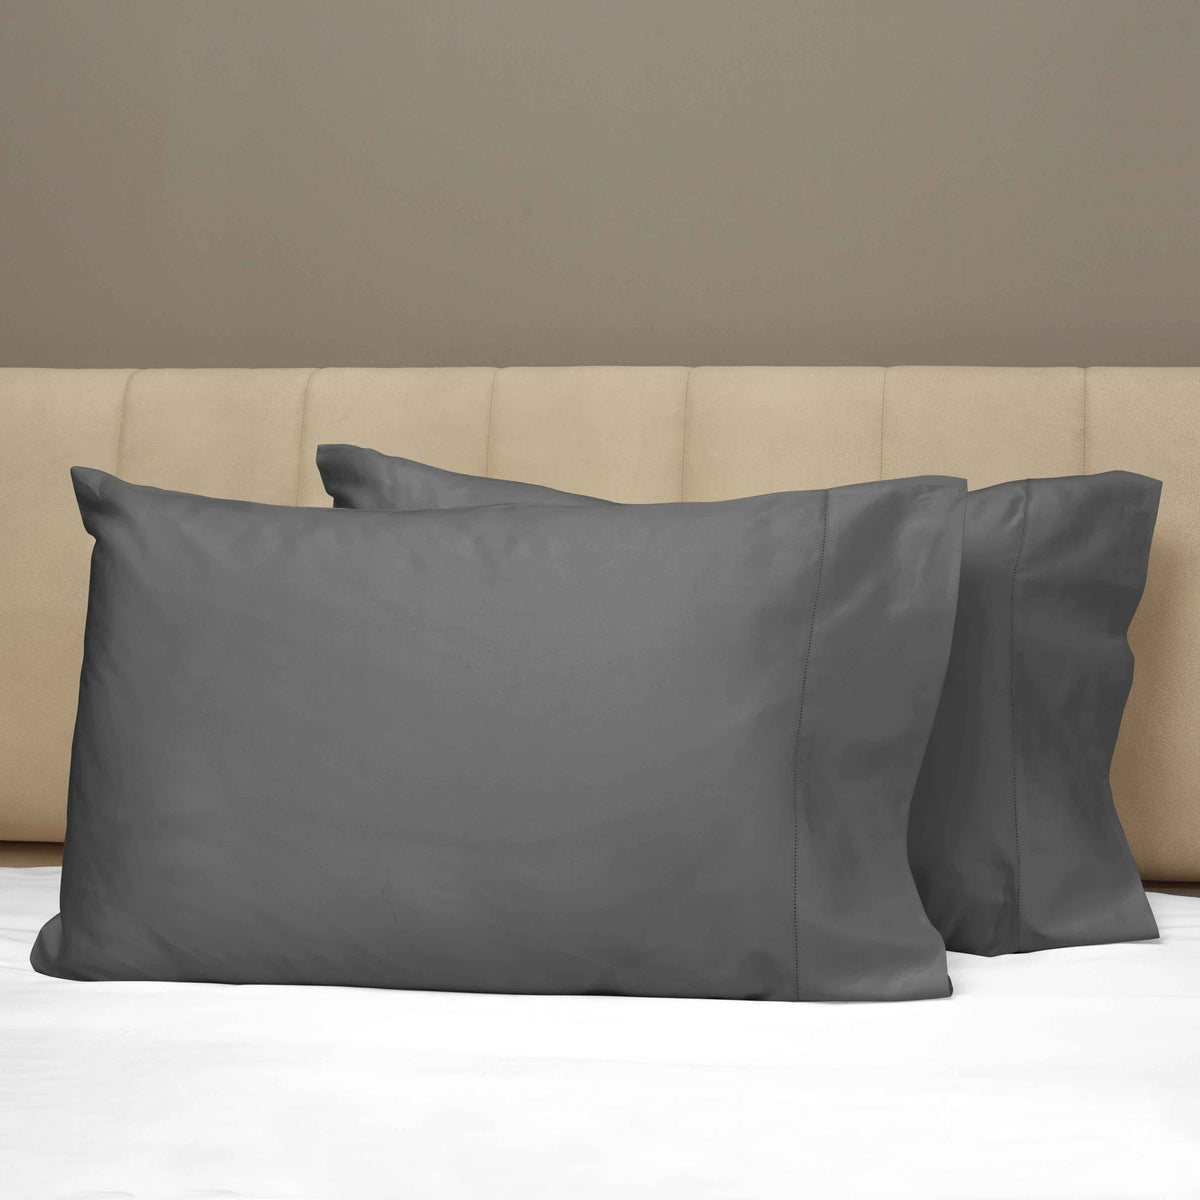 Closeup View of Signoria Raffaello Pillowcases in Lead Grey Color